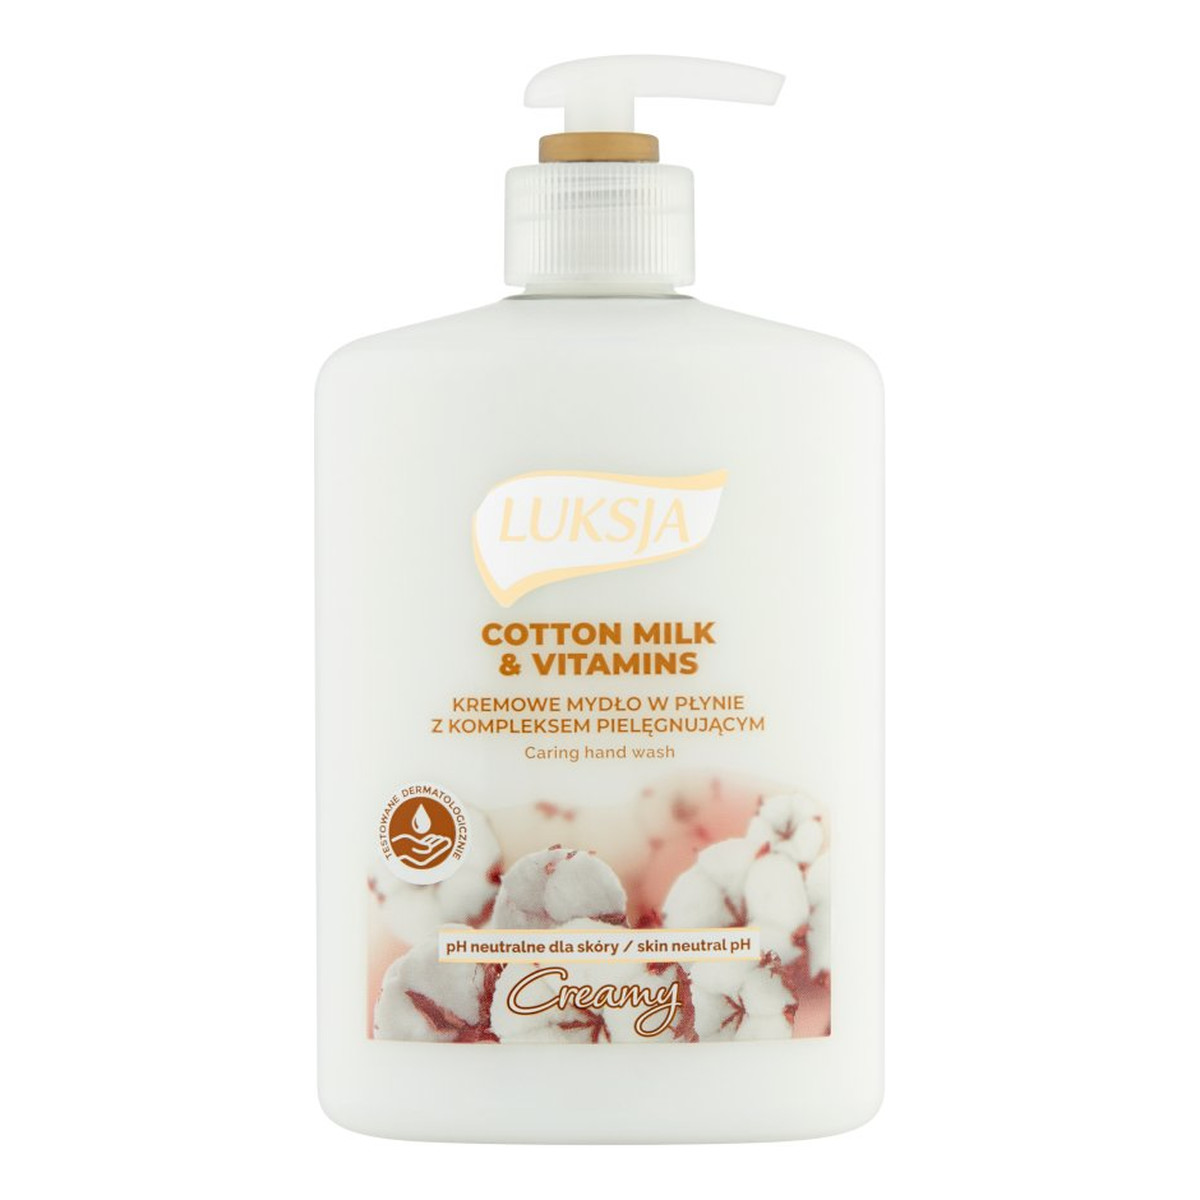 Luksja Creamy Cotton Milk & Vitamins Kremowe mydło w płynie 500ml